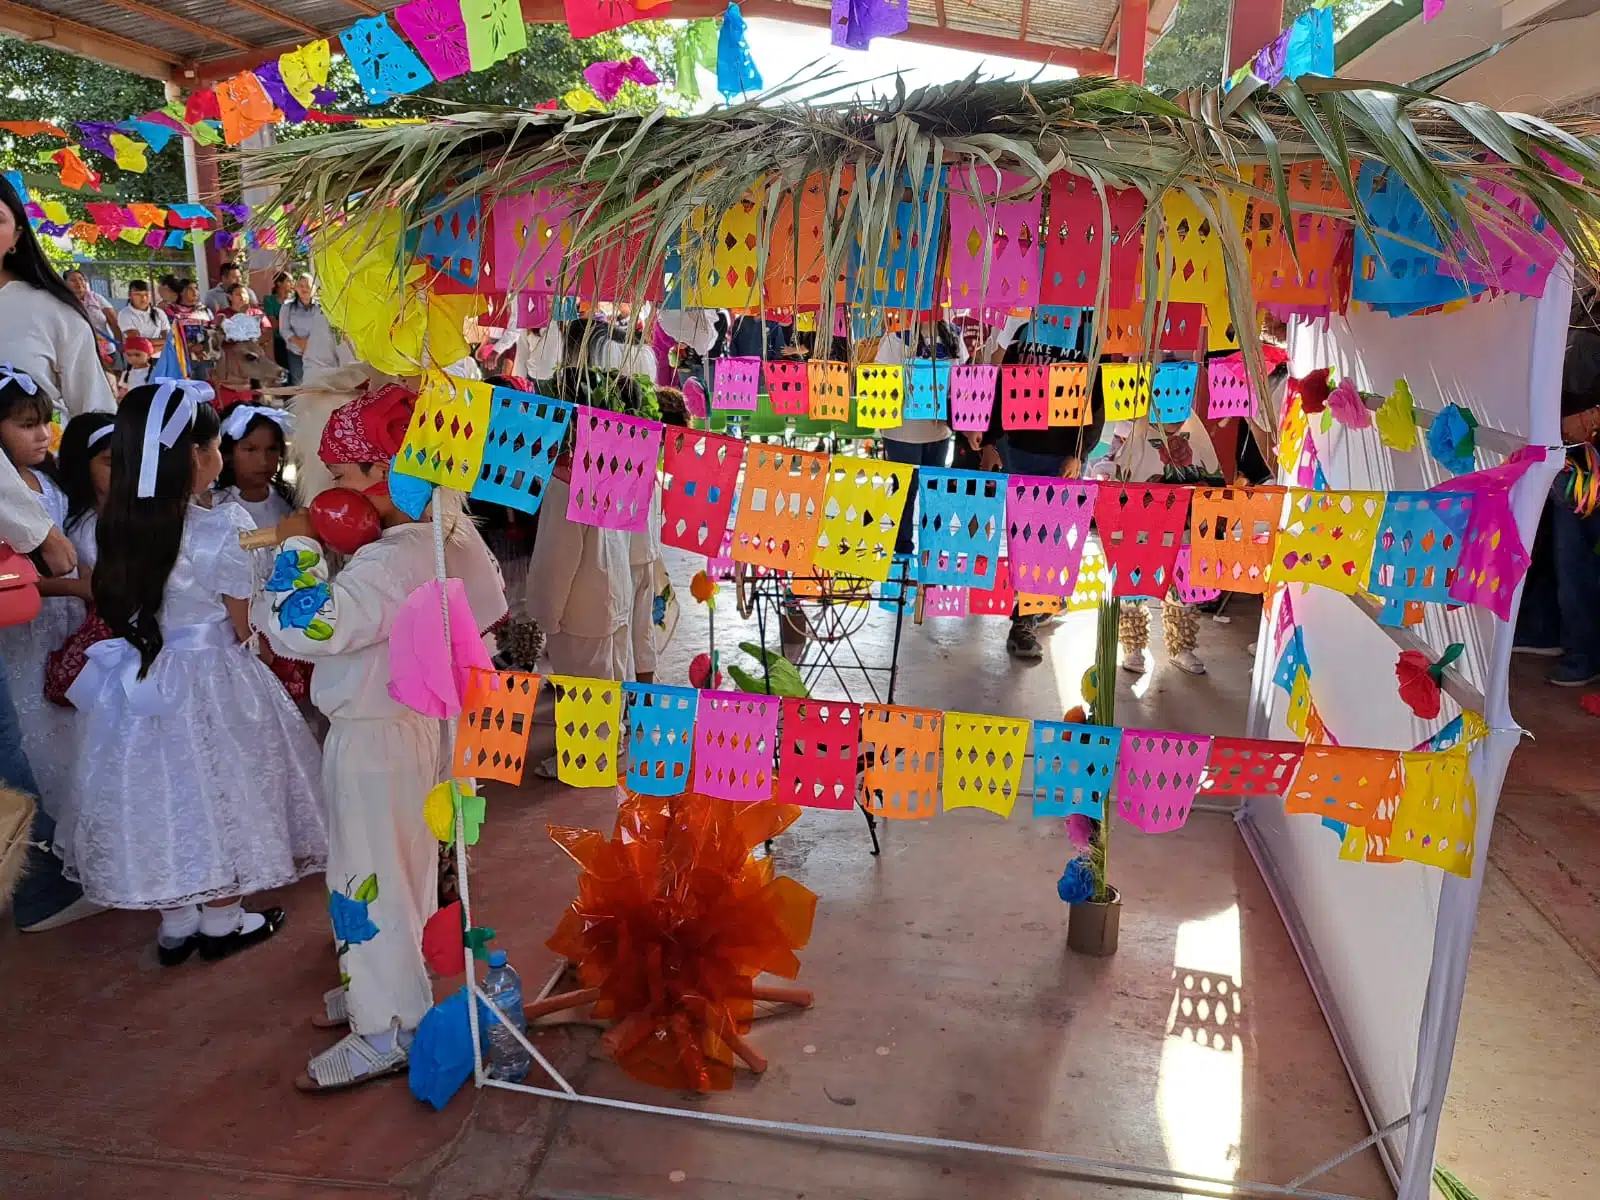 Festival yoreme realizado en el jardín de niños “Bertha Voon Glumer” de San Miguel Zapotitlán